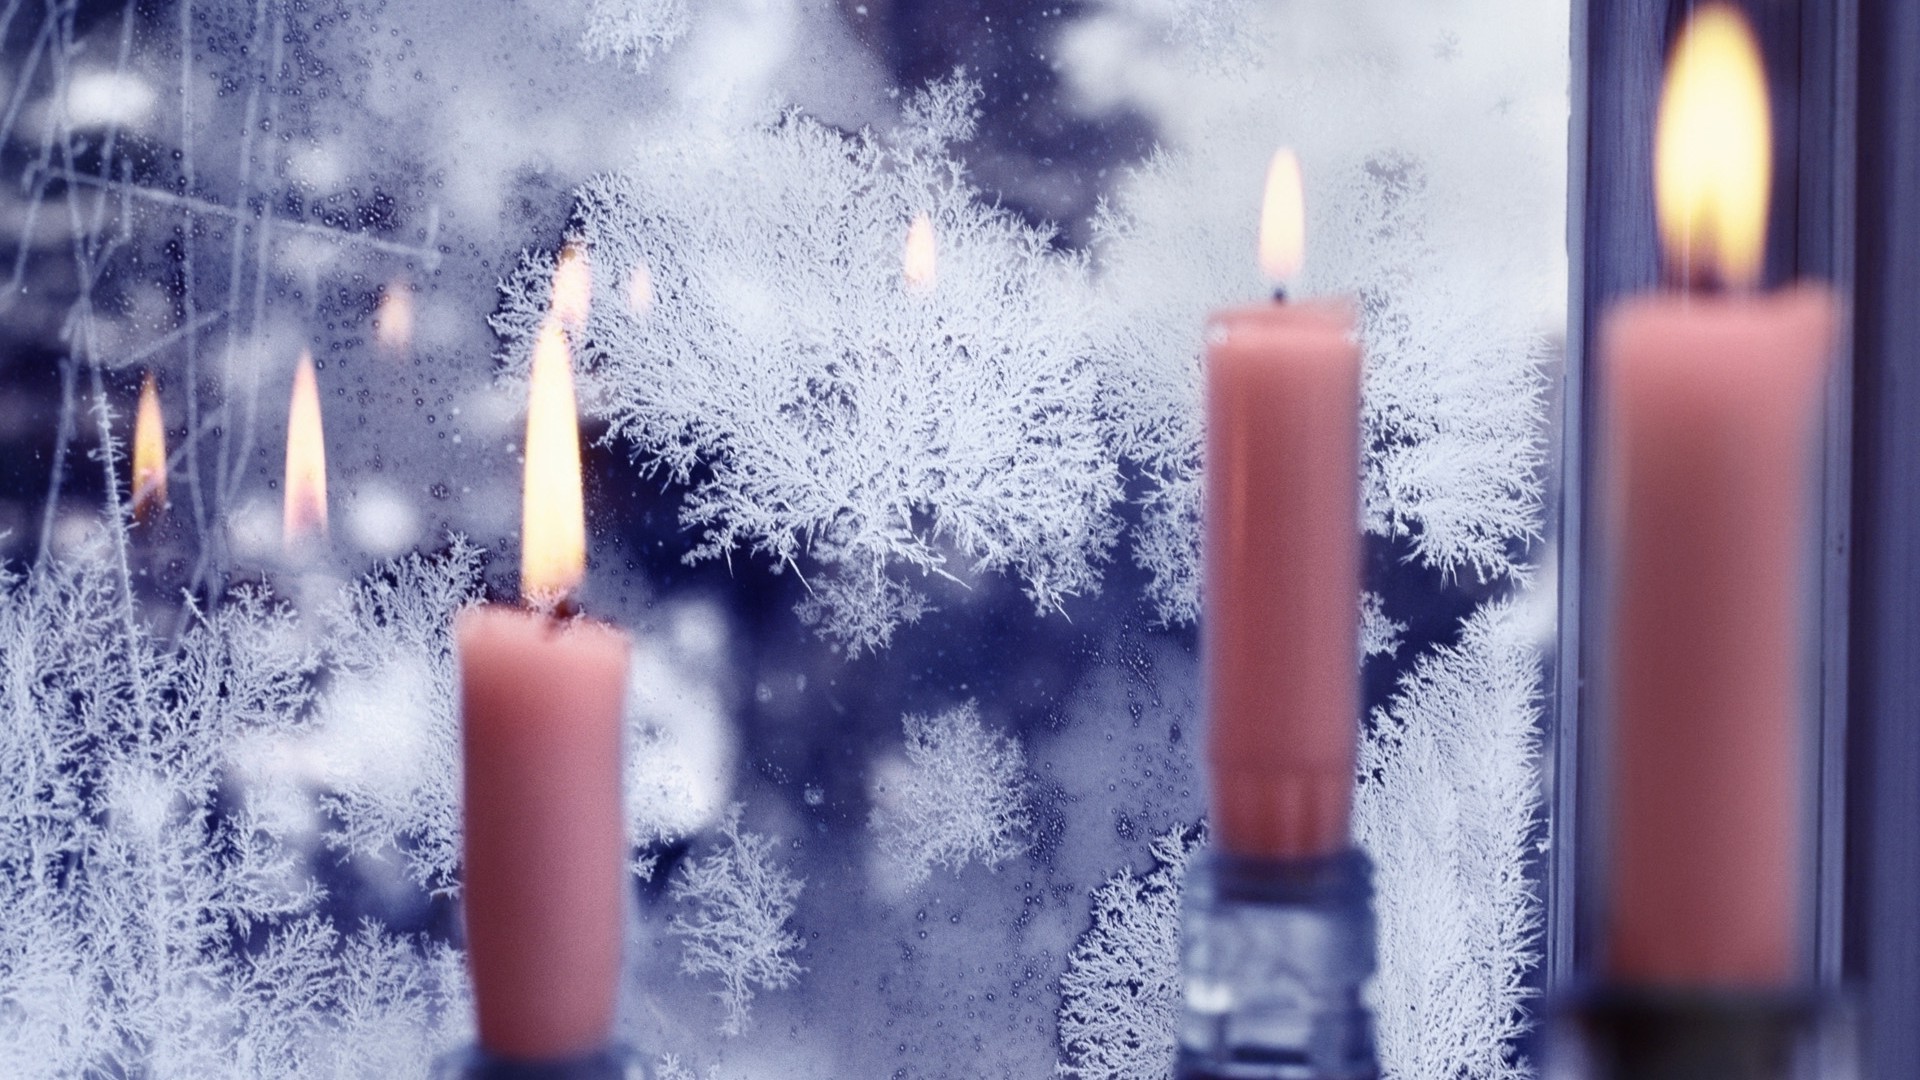 новый год свеча пламя свечи воск сожгли рождество праздник фитиль релаксация подсвечник медитация сжечь свет темный яркий духовность появлением зима религия